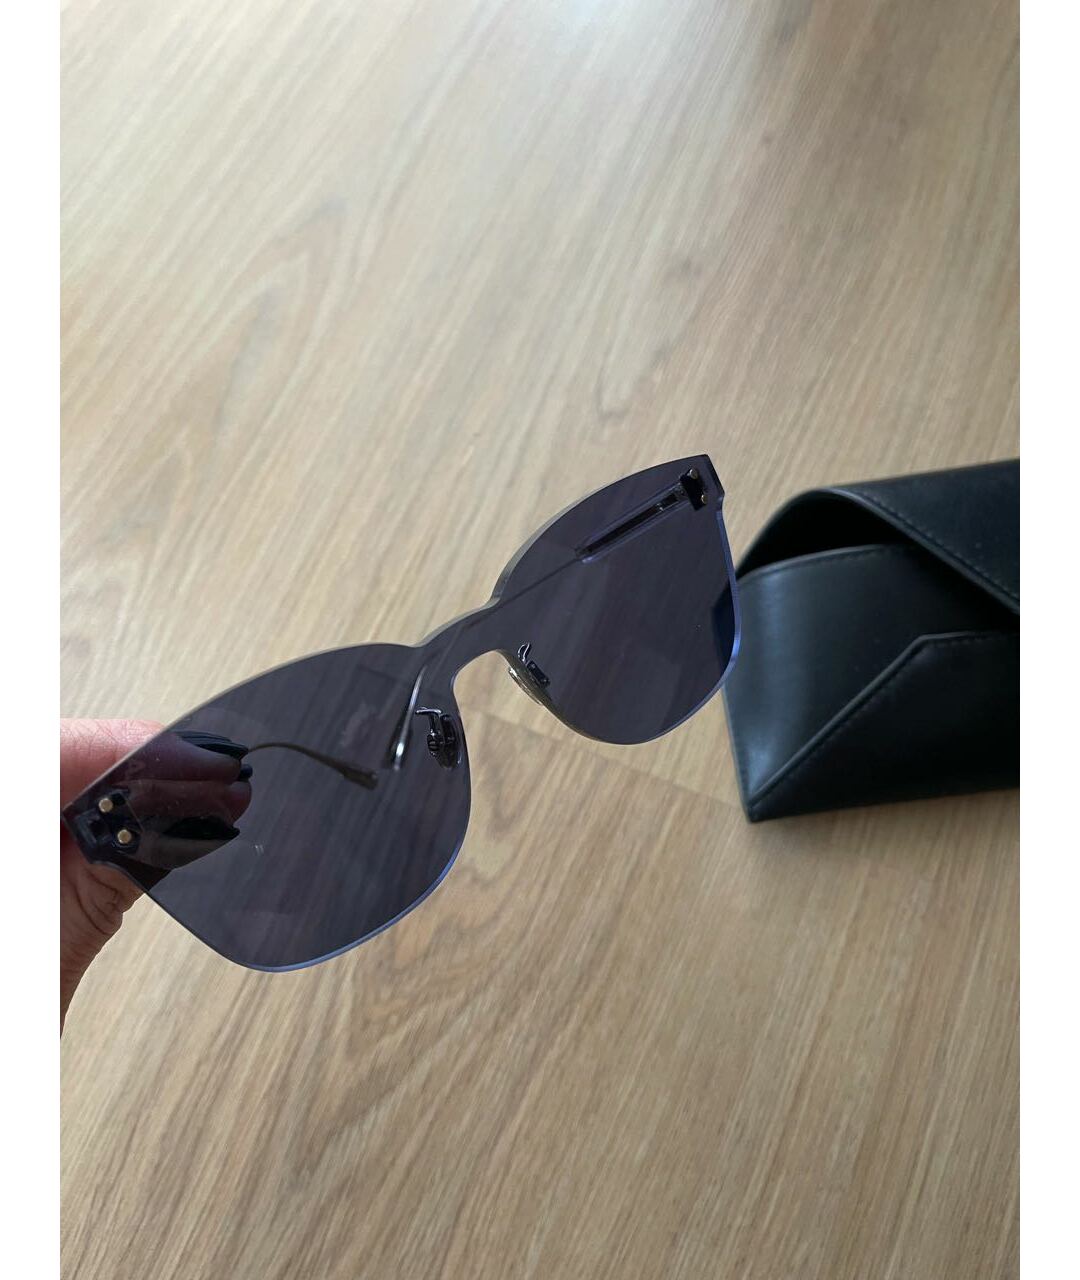 CHRISTIAN DIOR PRE-OWNED Синие пластиковые солнцезащитные очки, фото 3